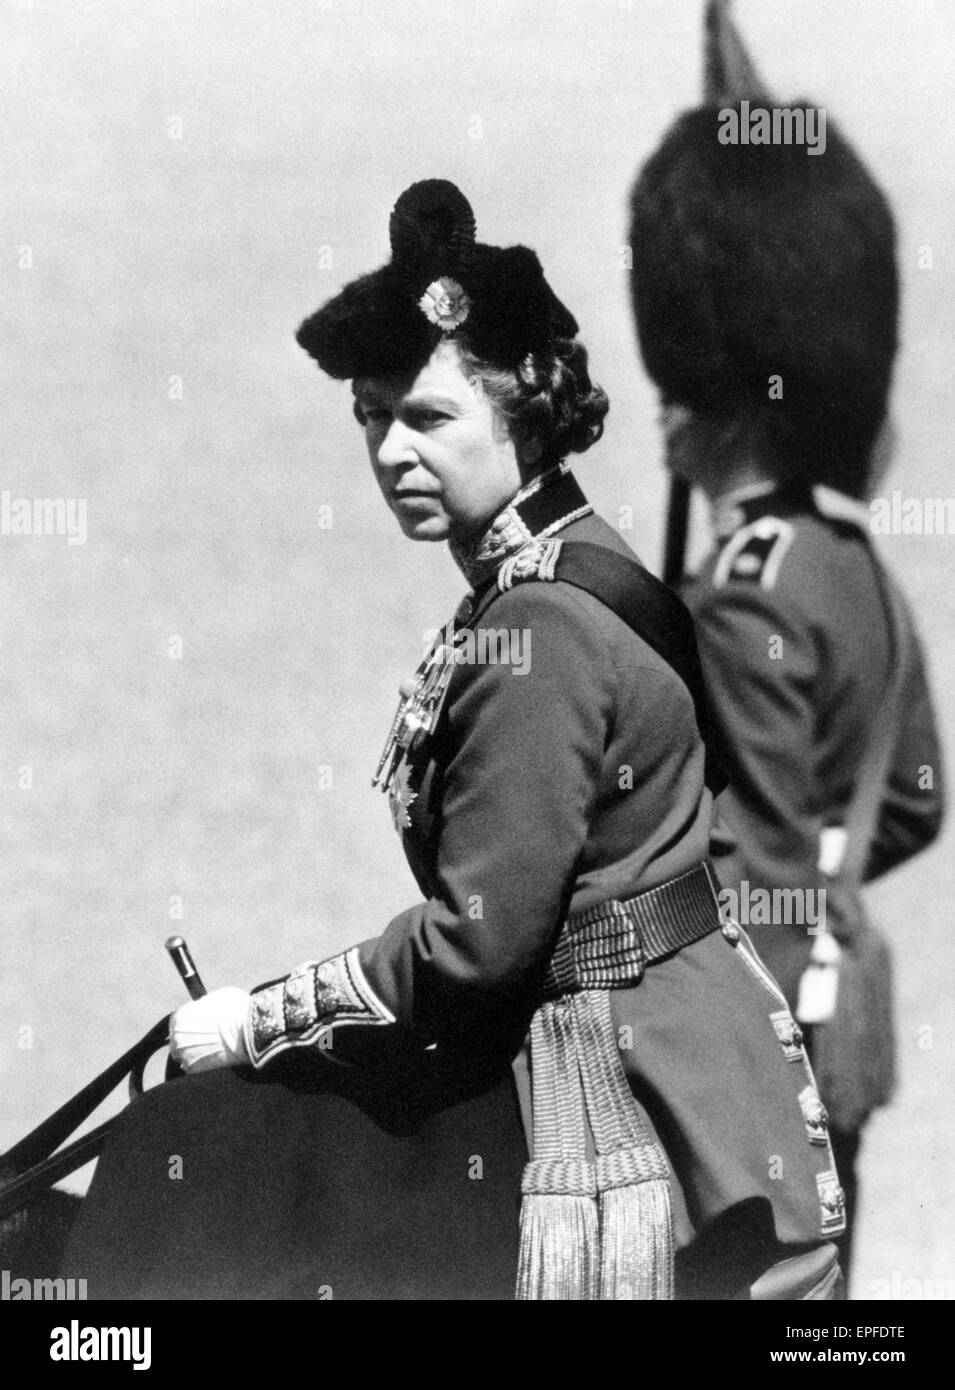 Die Königin nimmt Teil an Trooping die Farbe Zeremonie mit 1st Battalion Scots Guards, Horse Guards Parade London, Samstag, 14. Juni 1986. Stockfoto